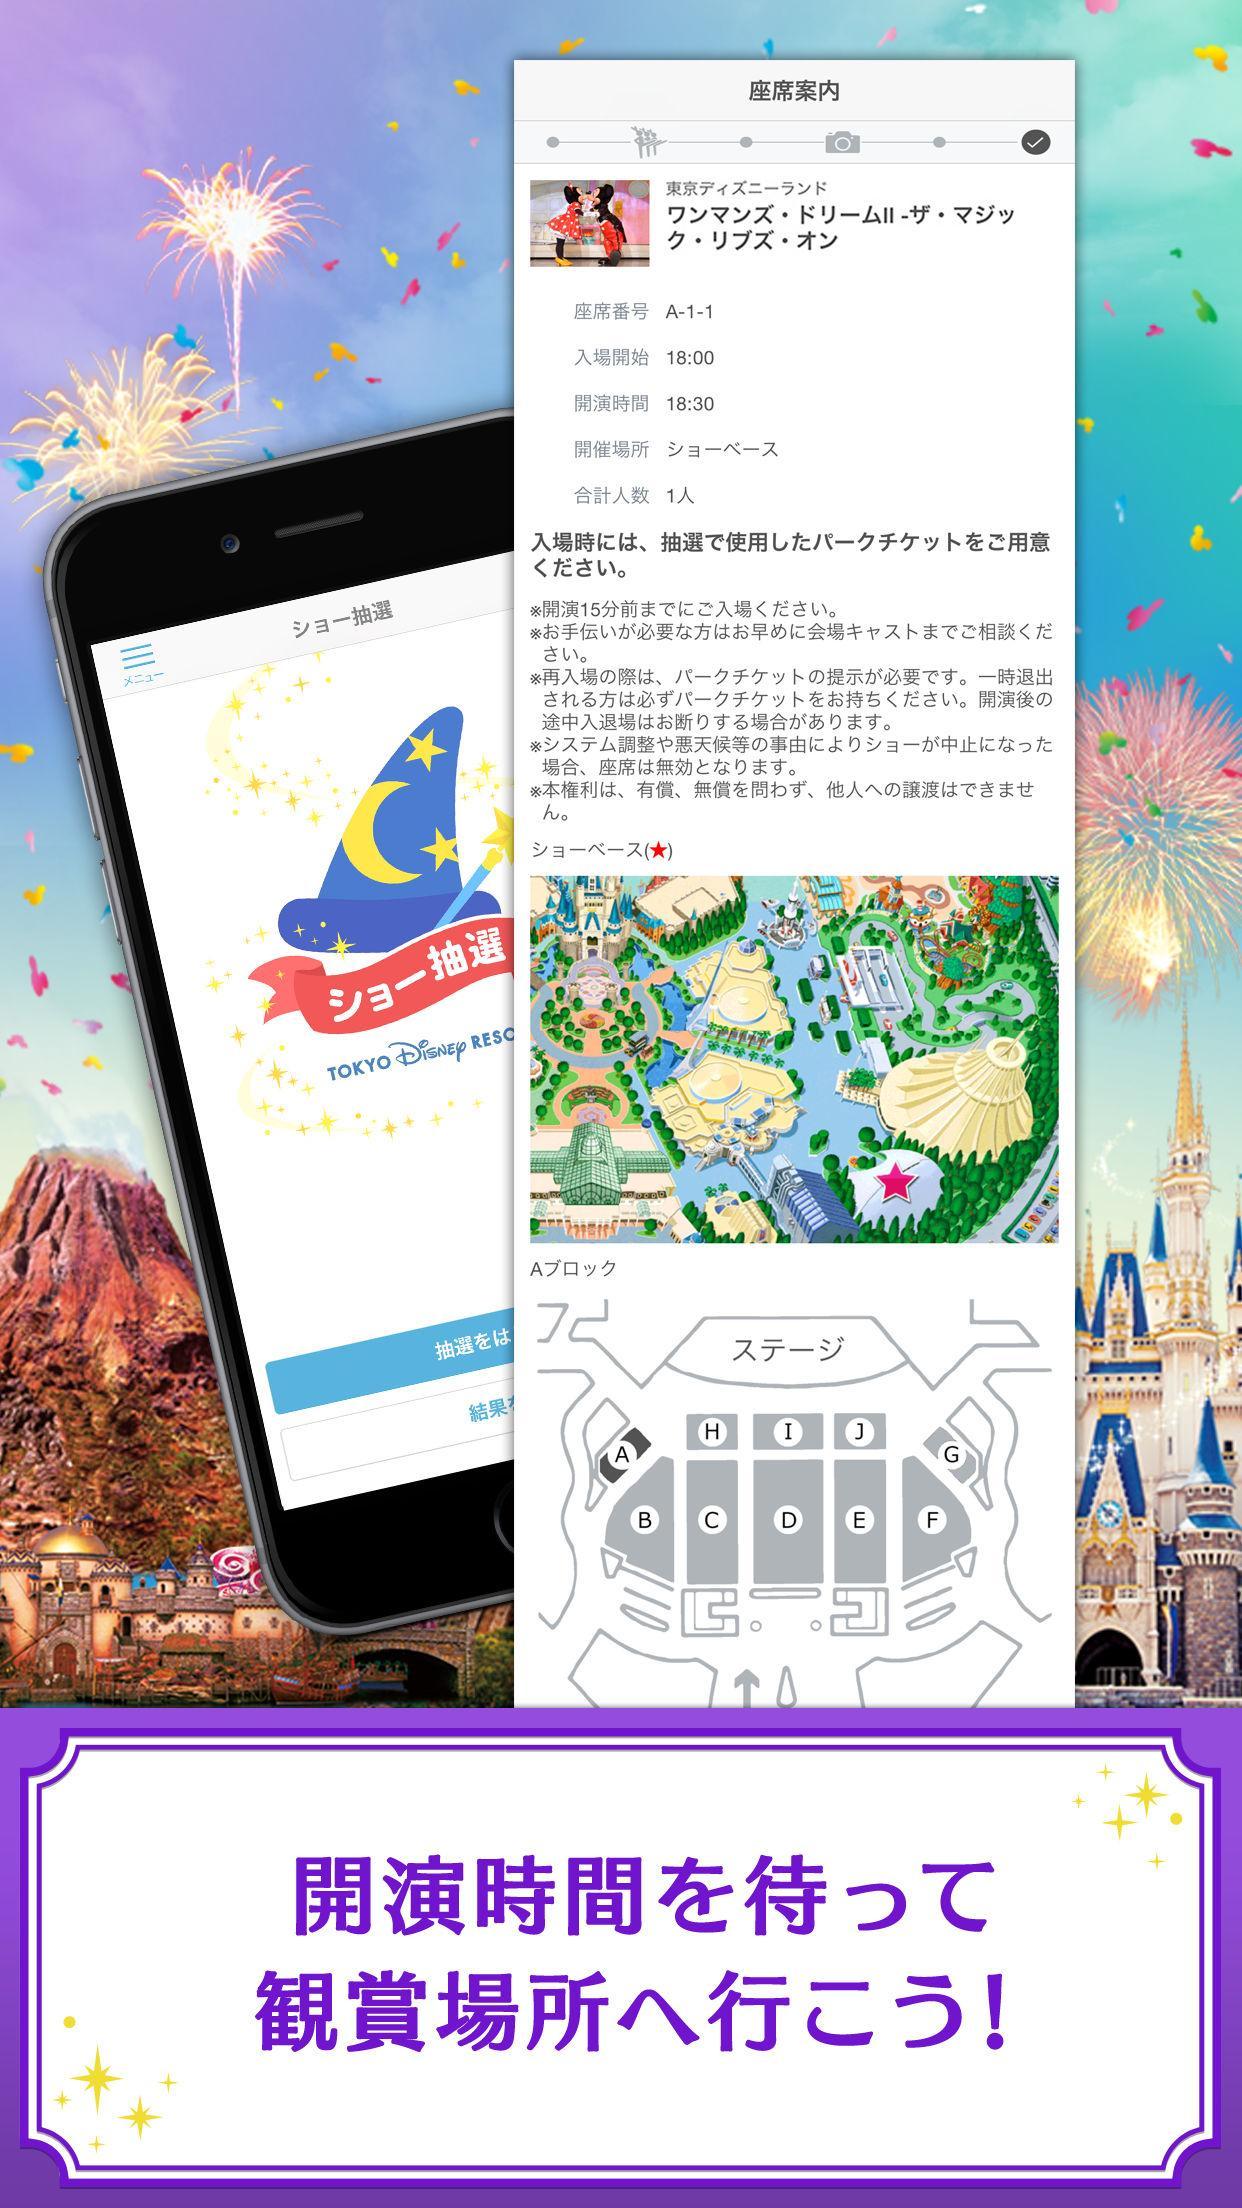 東京ディズニーリゾート公式 ショー抽選アプリ For Android Apk Download